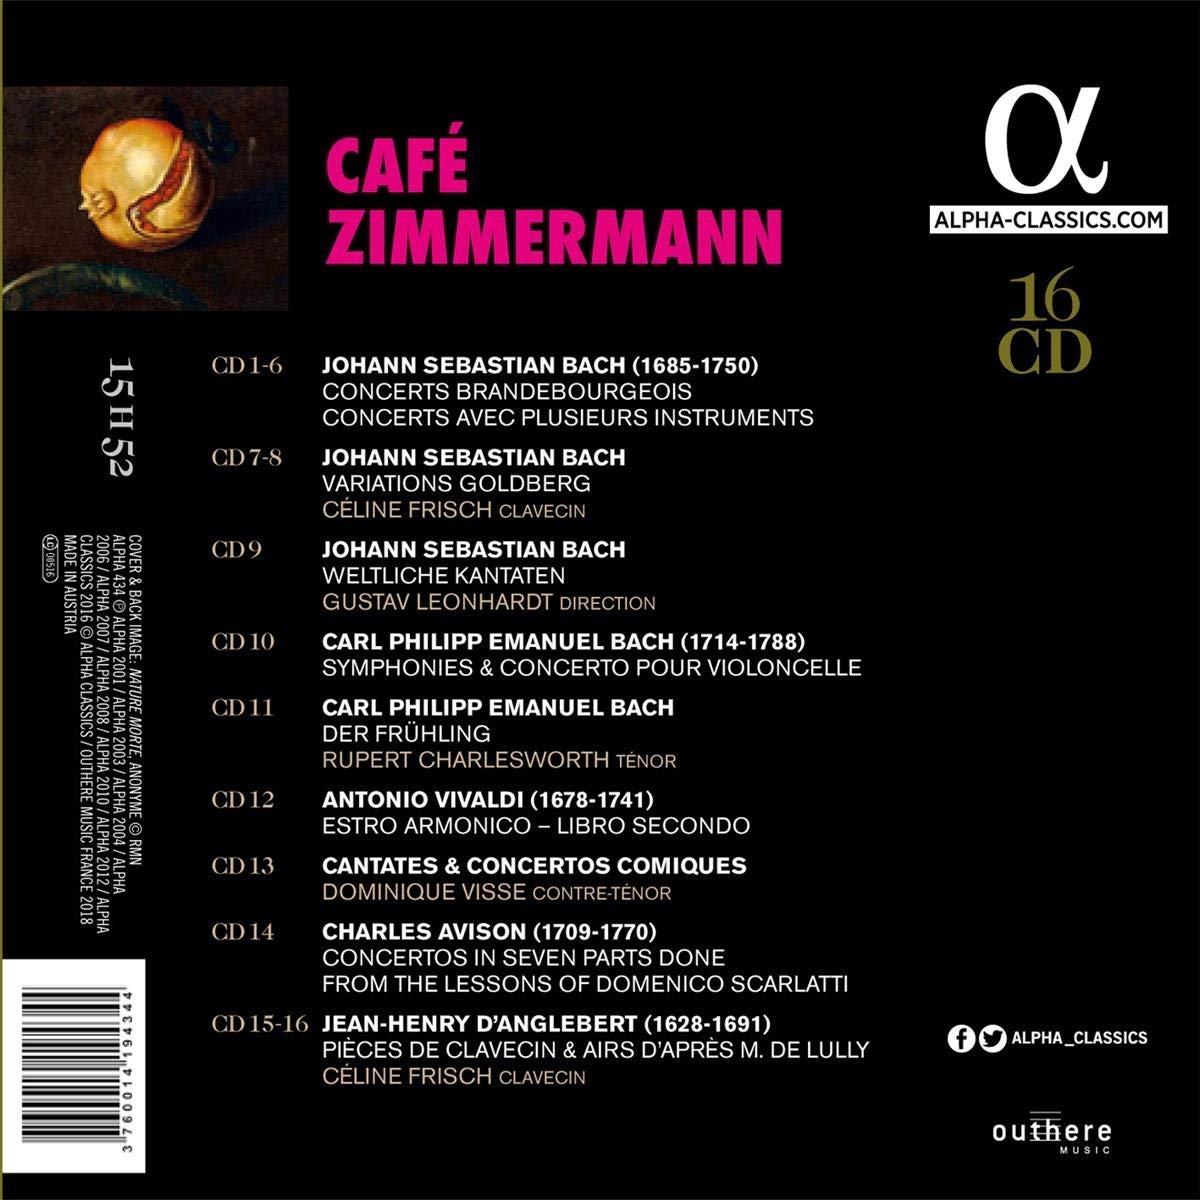 Cafe Zimmermann 카페 침머만 - 알파 녹음 전집 박스 (Cafe Zimmermann) 